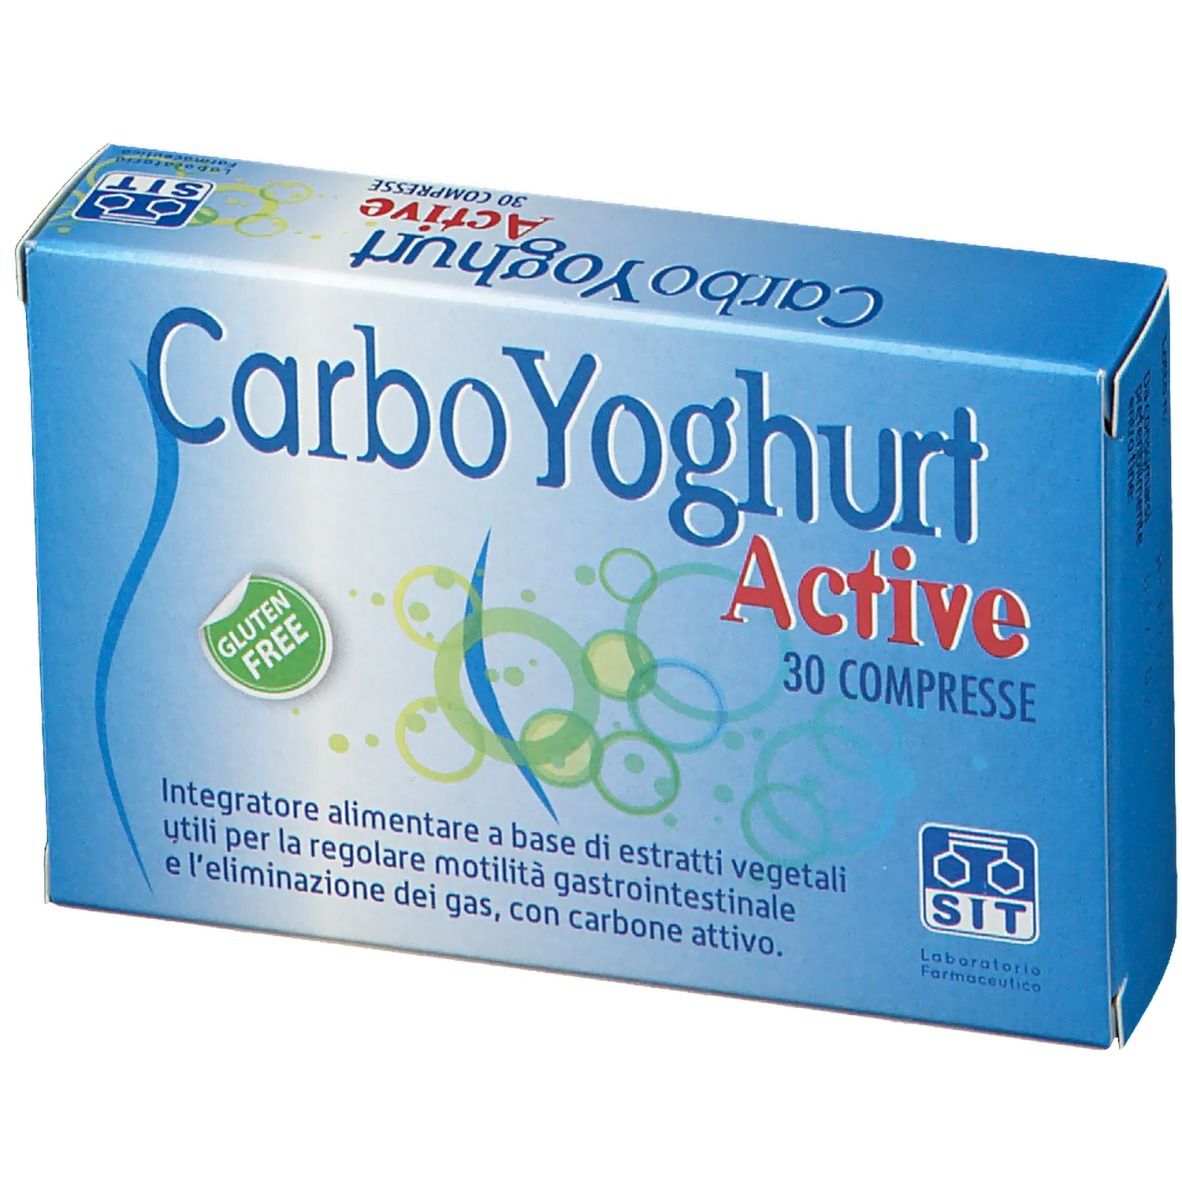 CarboYoghurt Active Compresse